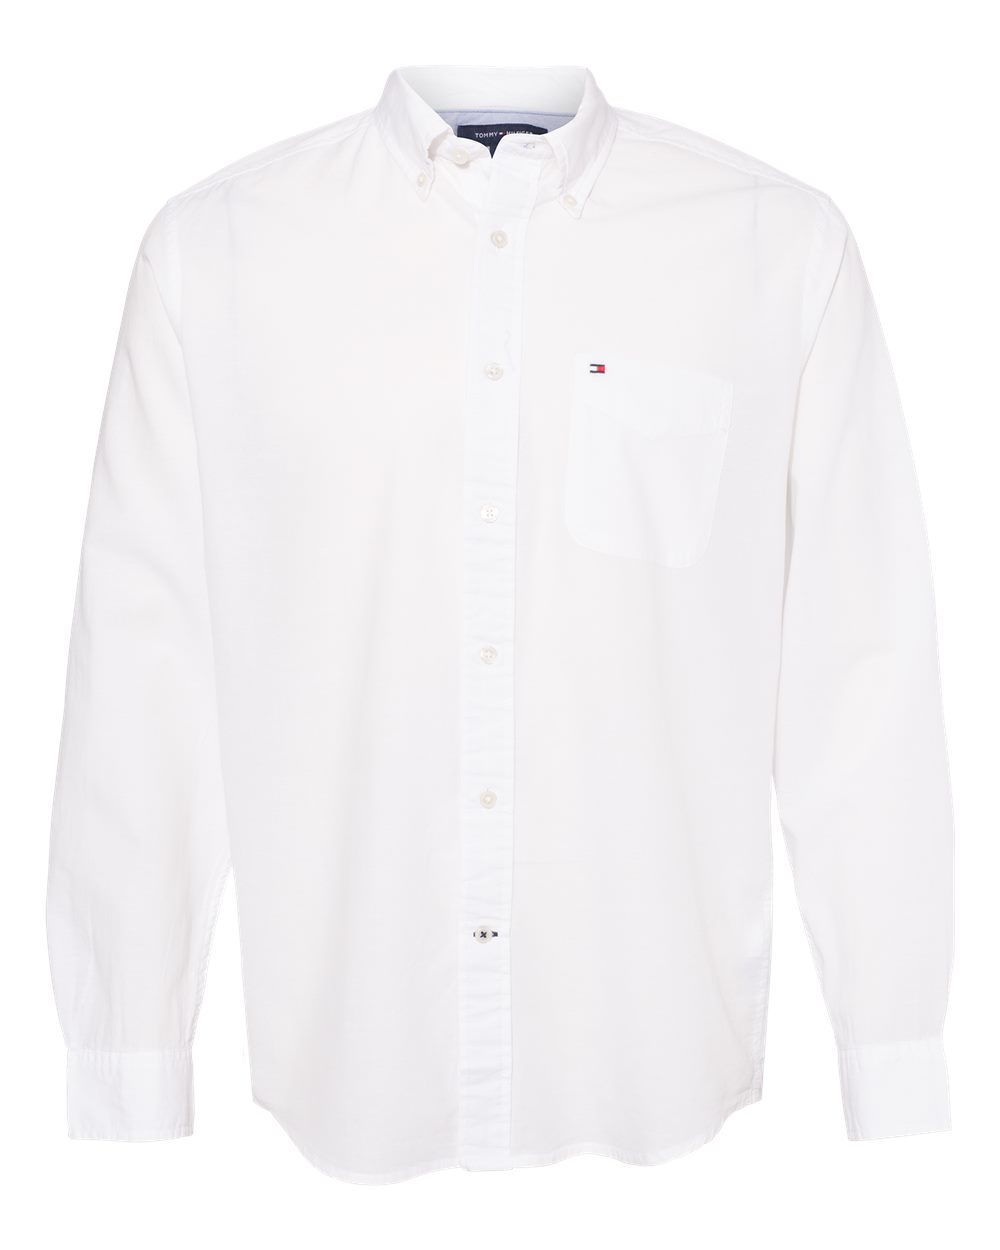 Cotton/Linen Shirt - Tommy Hilfiger 